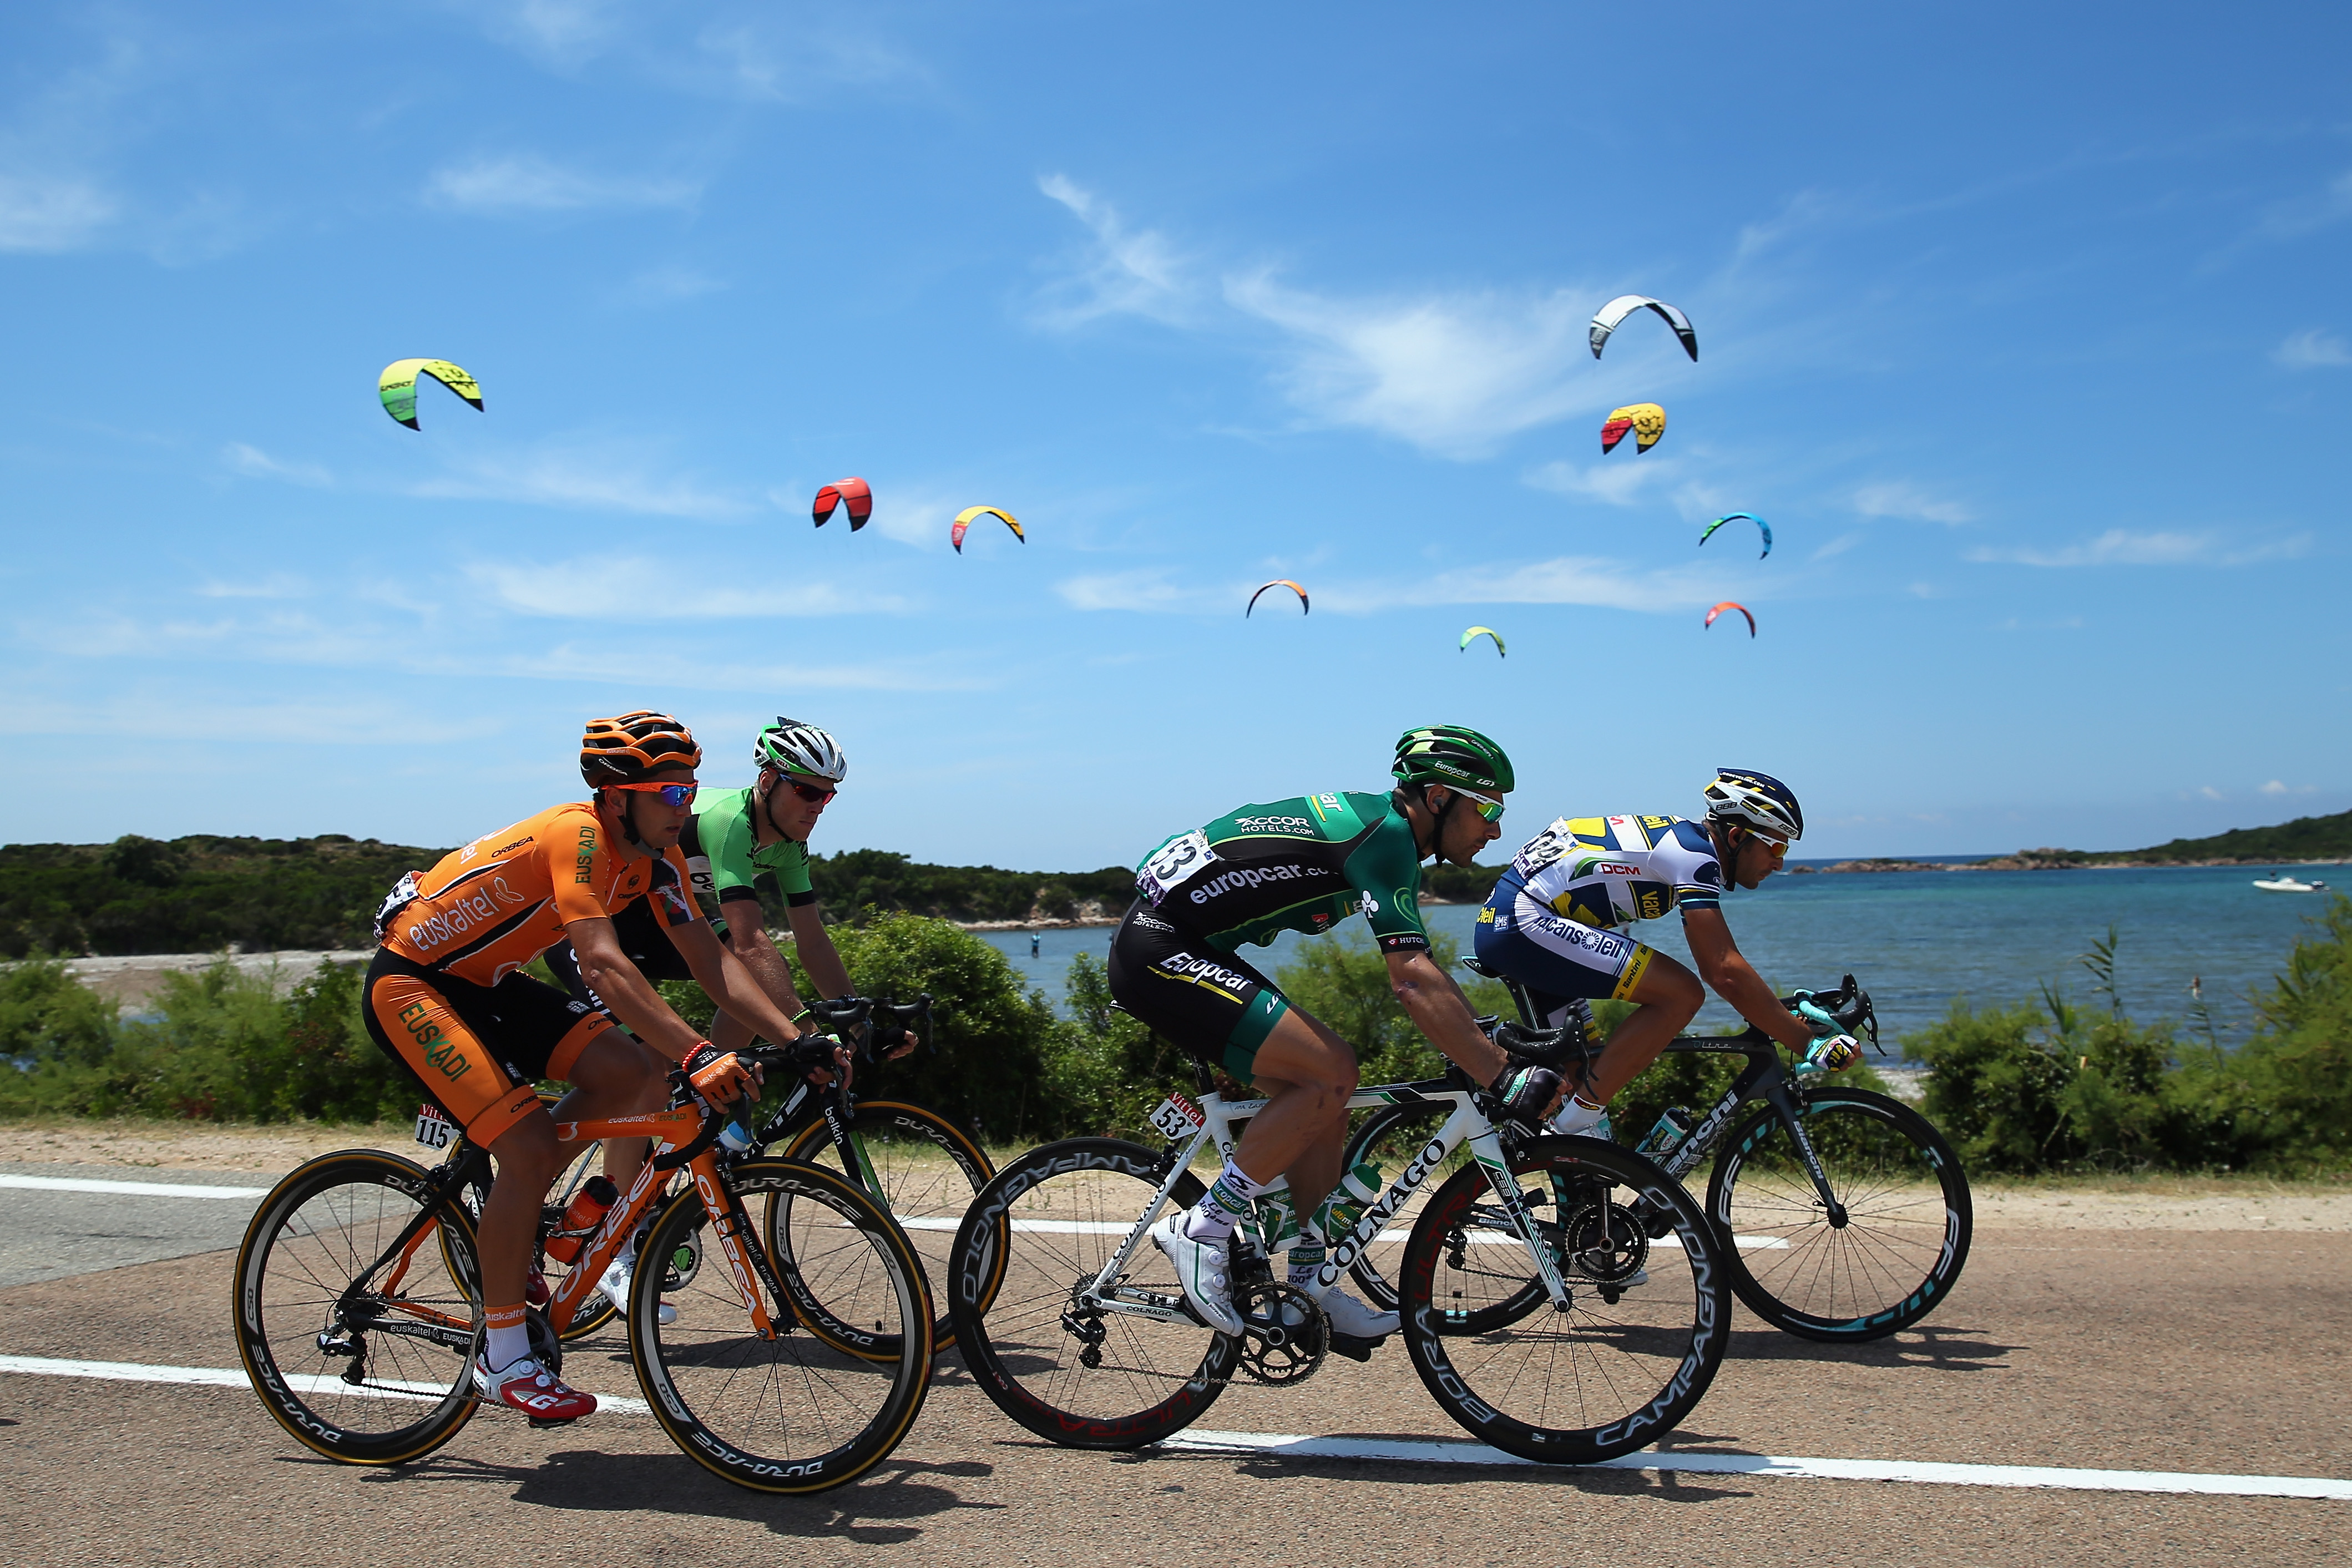 Nejlepší fotky z letošní Tour de France